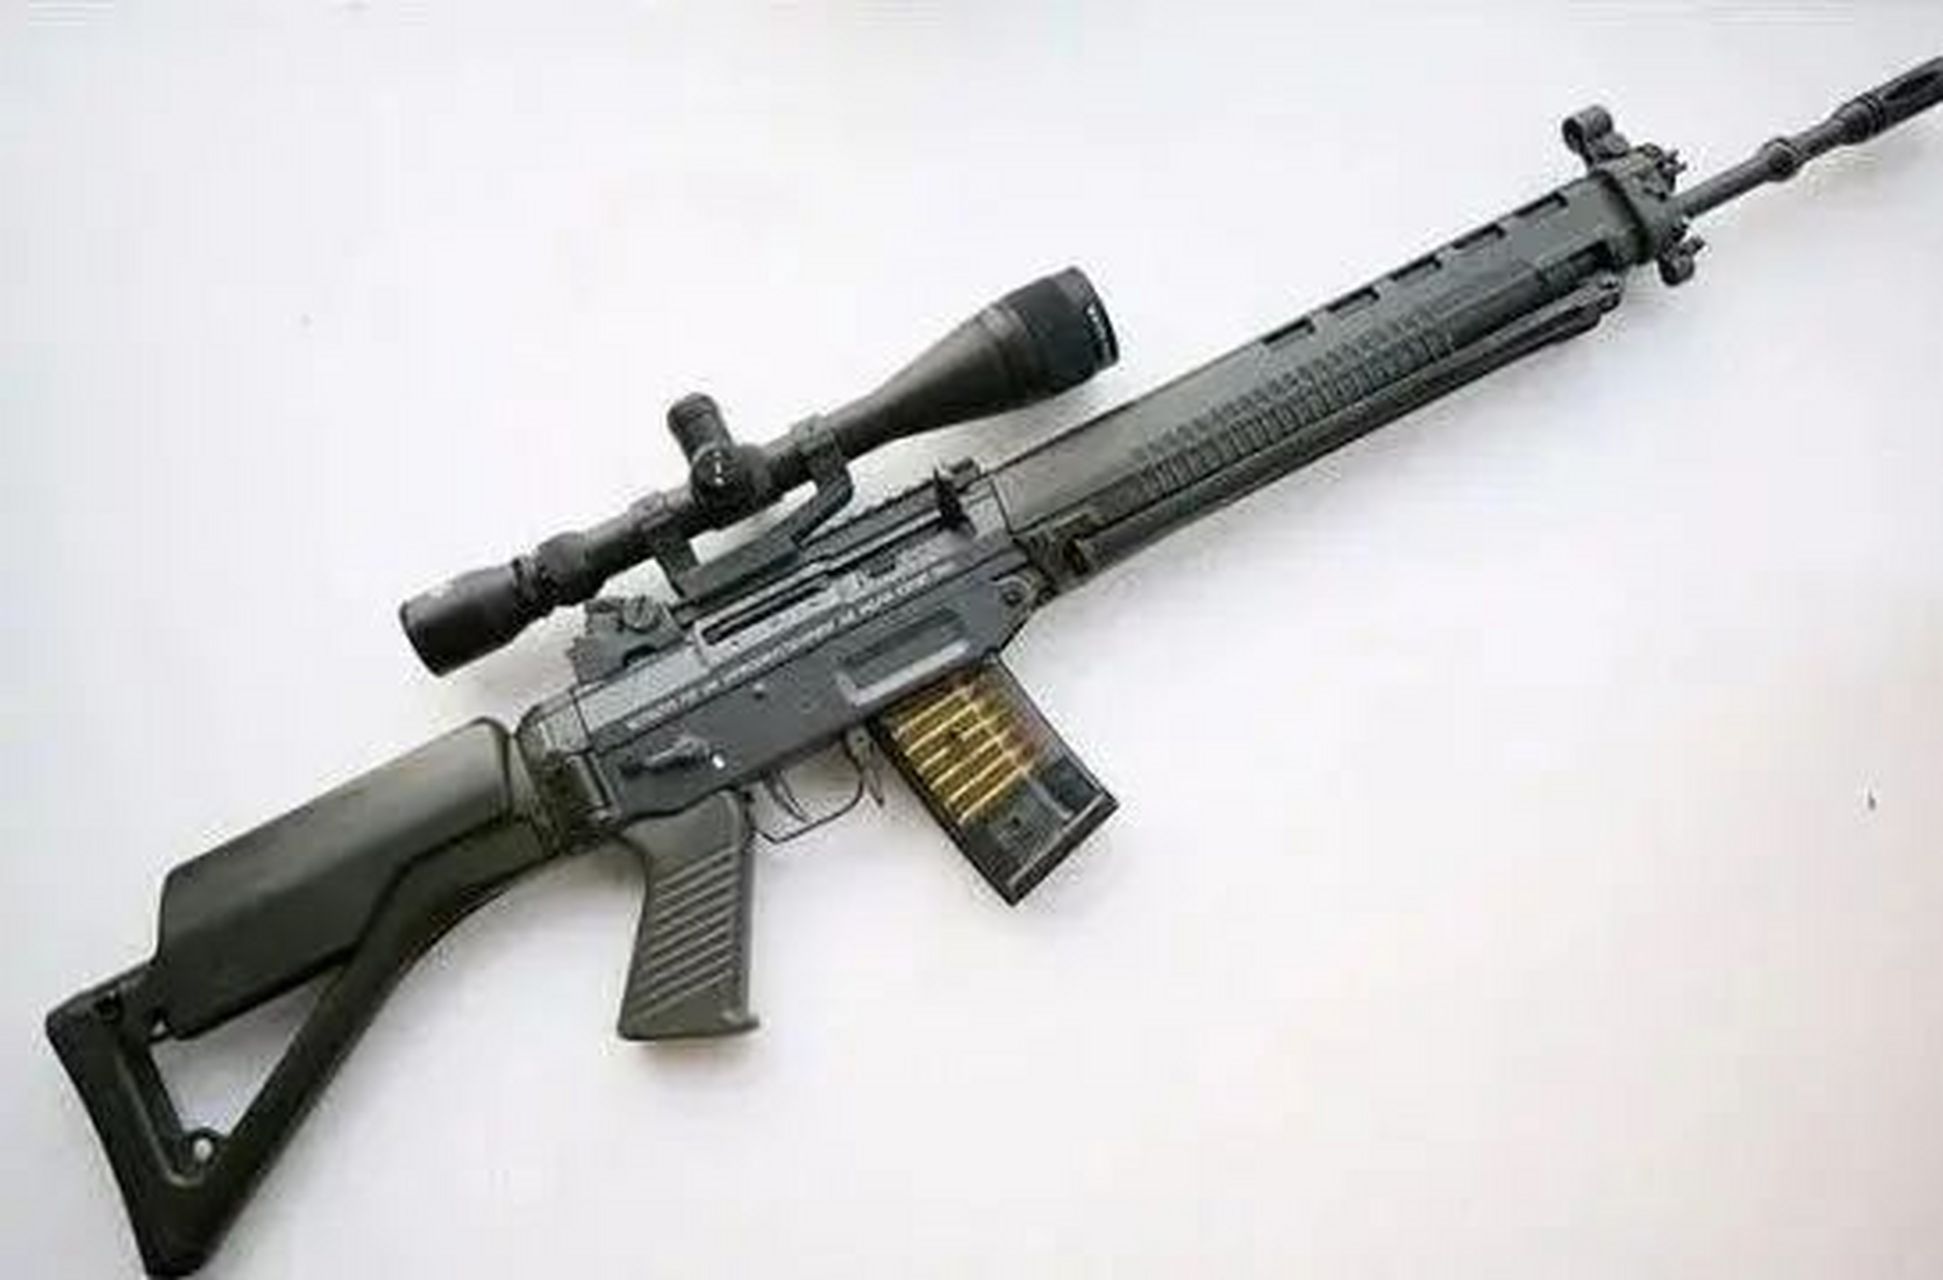 产品名称:sg550 类型:突击步枪 国家:瑞士 口径:5.